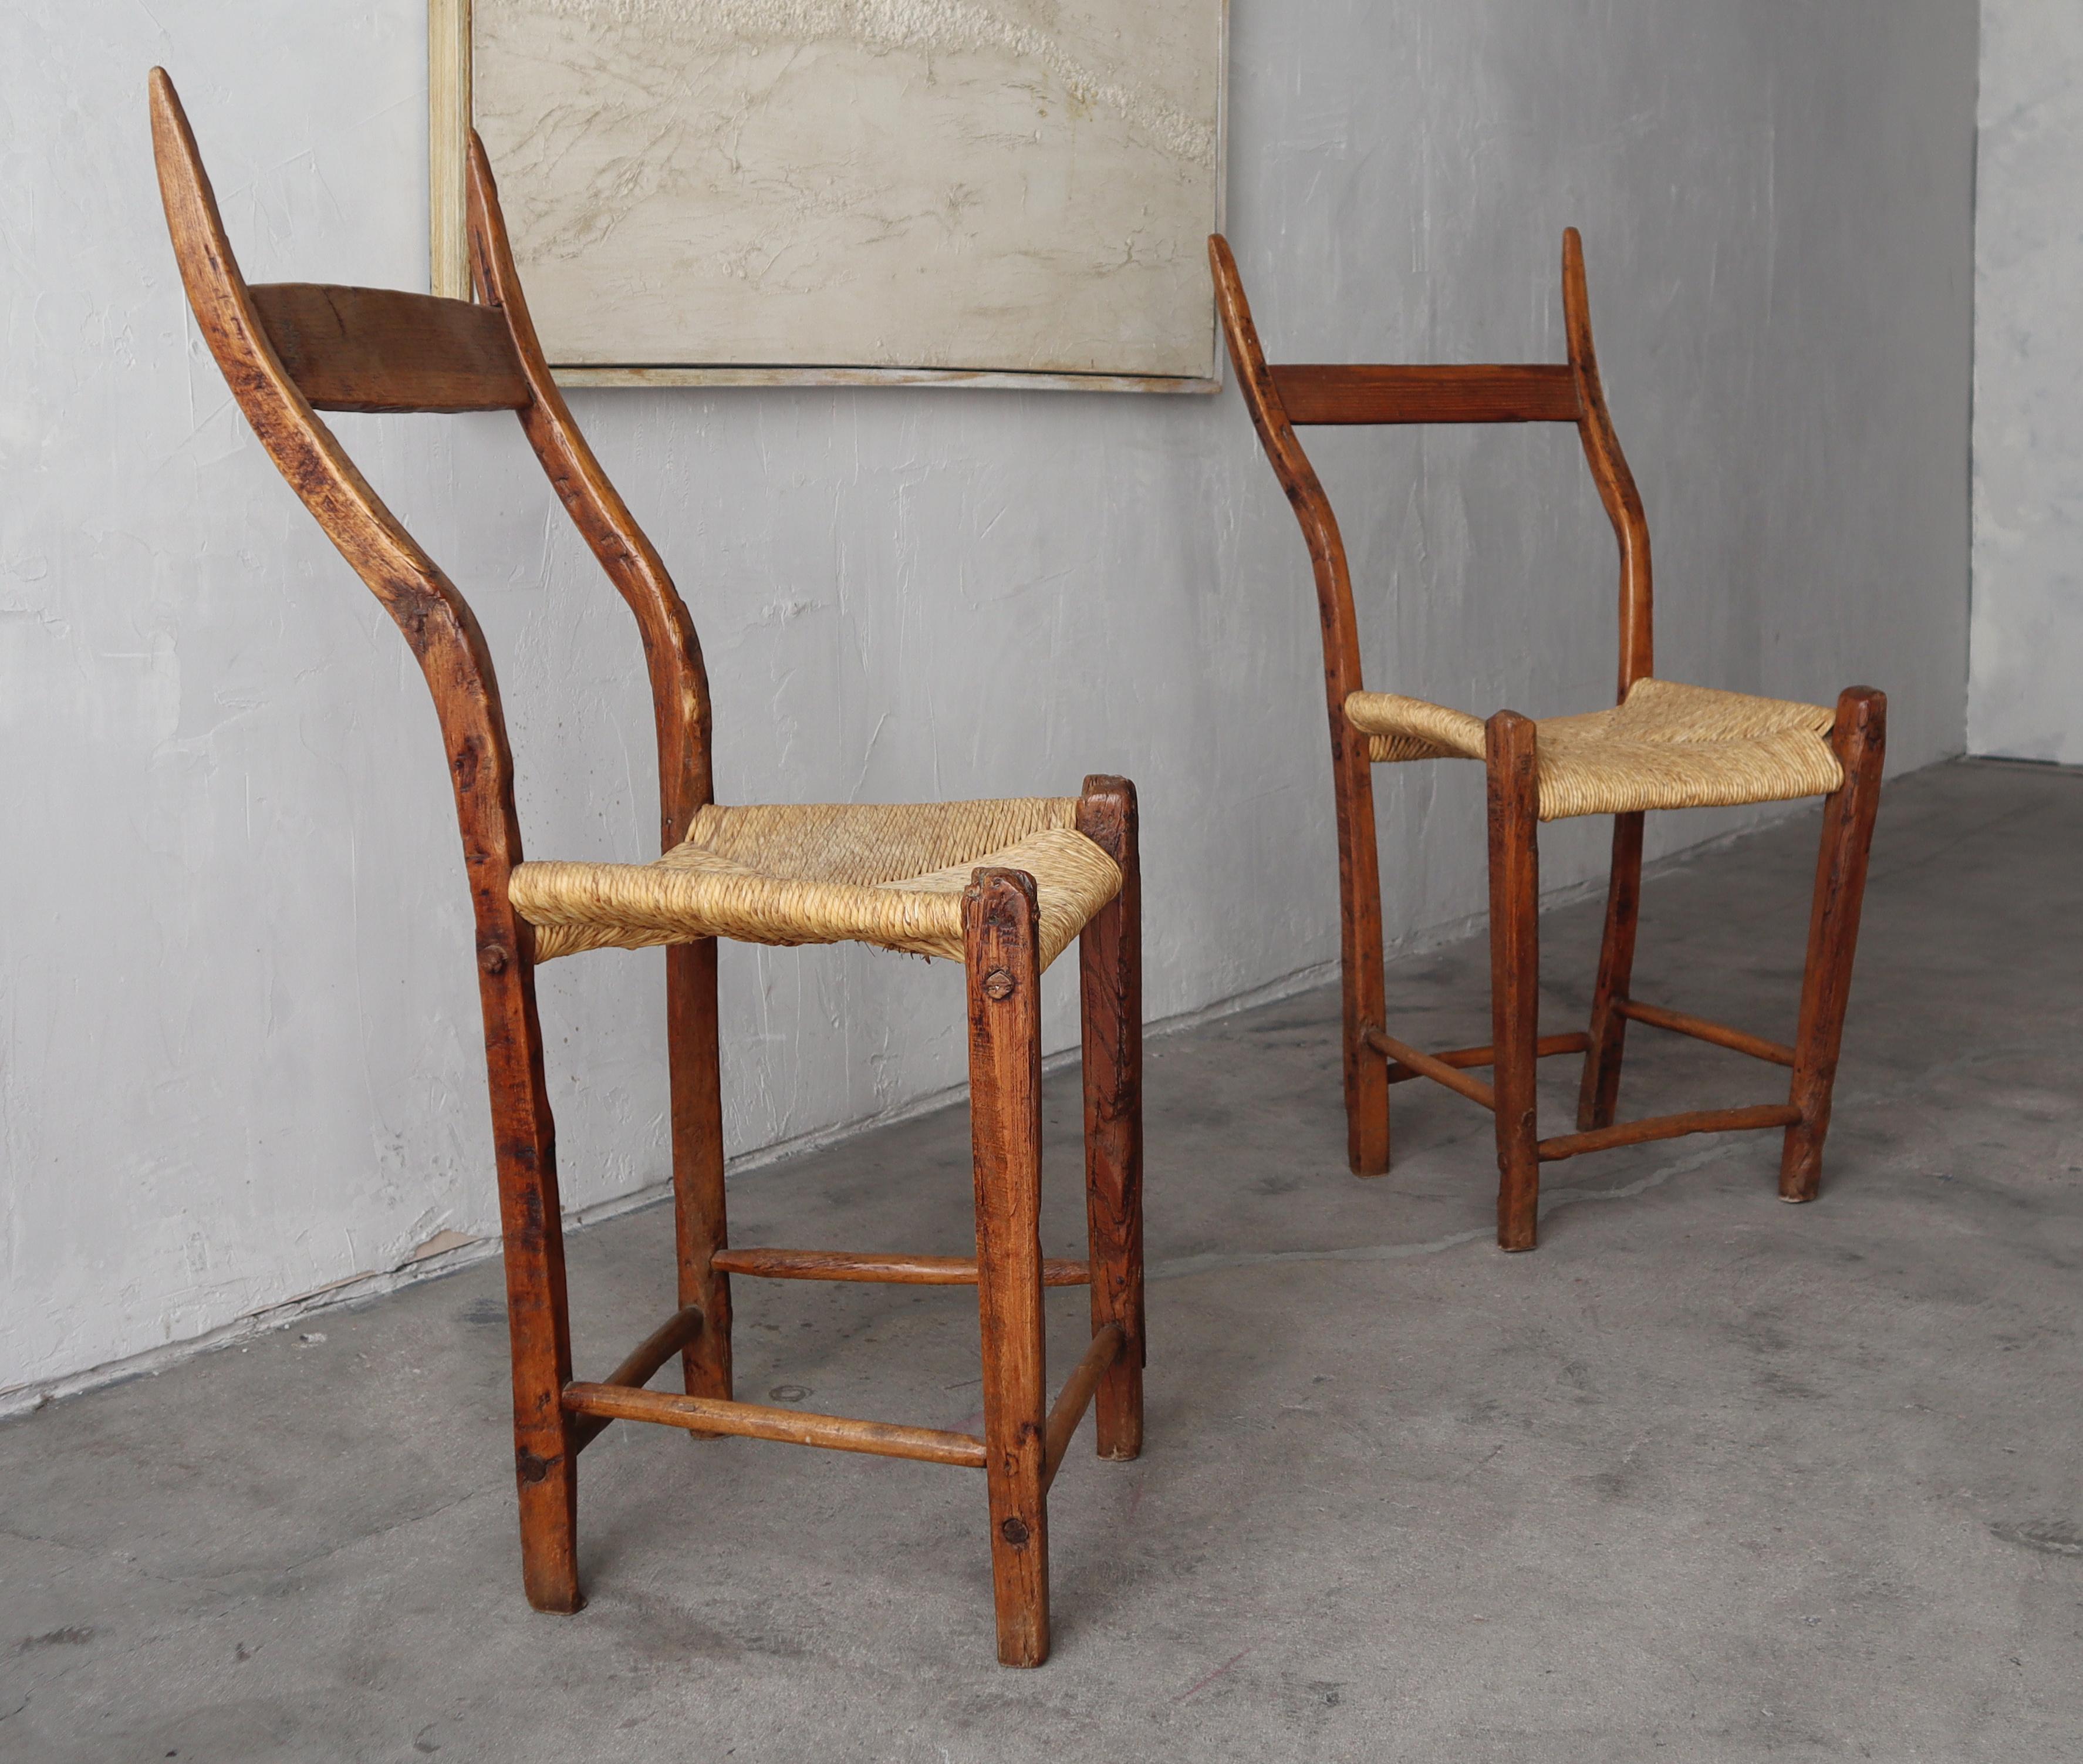 ZWEI STÜHLE VERFÜGBAR

Schöne Stühle im Wabi-Sabi-Stil. Französische Handwerkskunst, antike 1800er Jahre mit Binsenbestuhlung und einer unvollkommenen Holzstruktur. Die handwerklichen Details dieser Stühle sind unübertroffen. 

Die Stühle sind